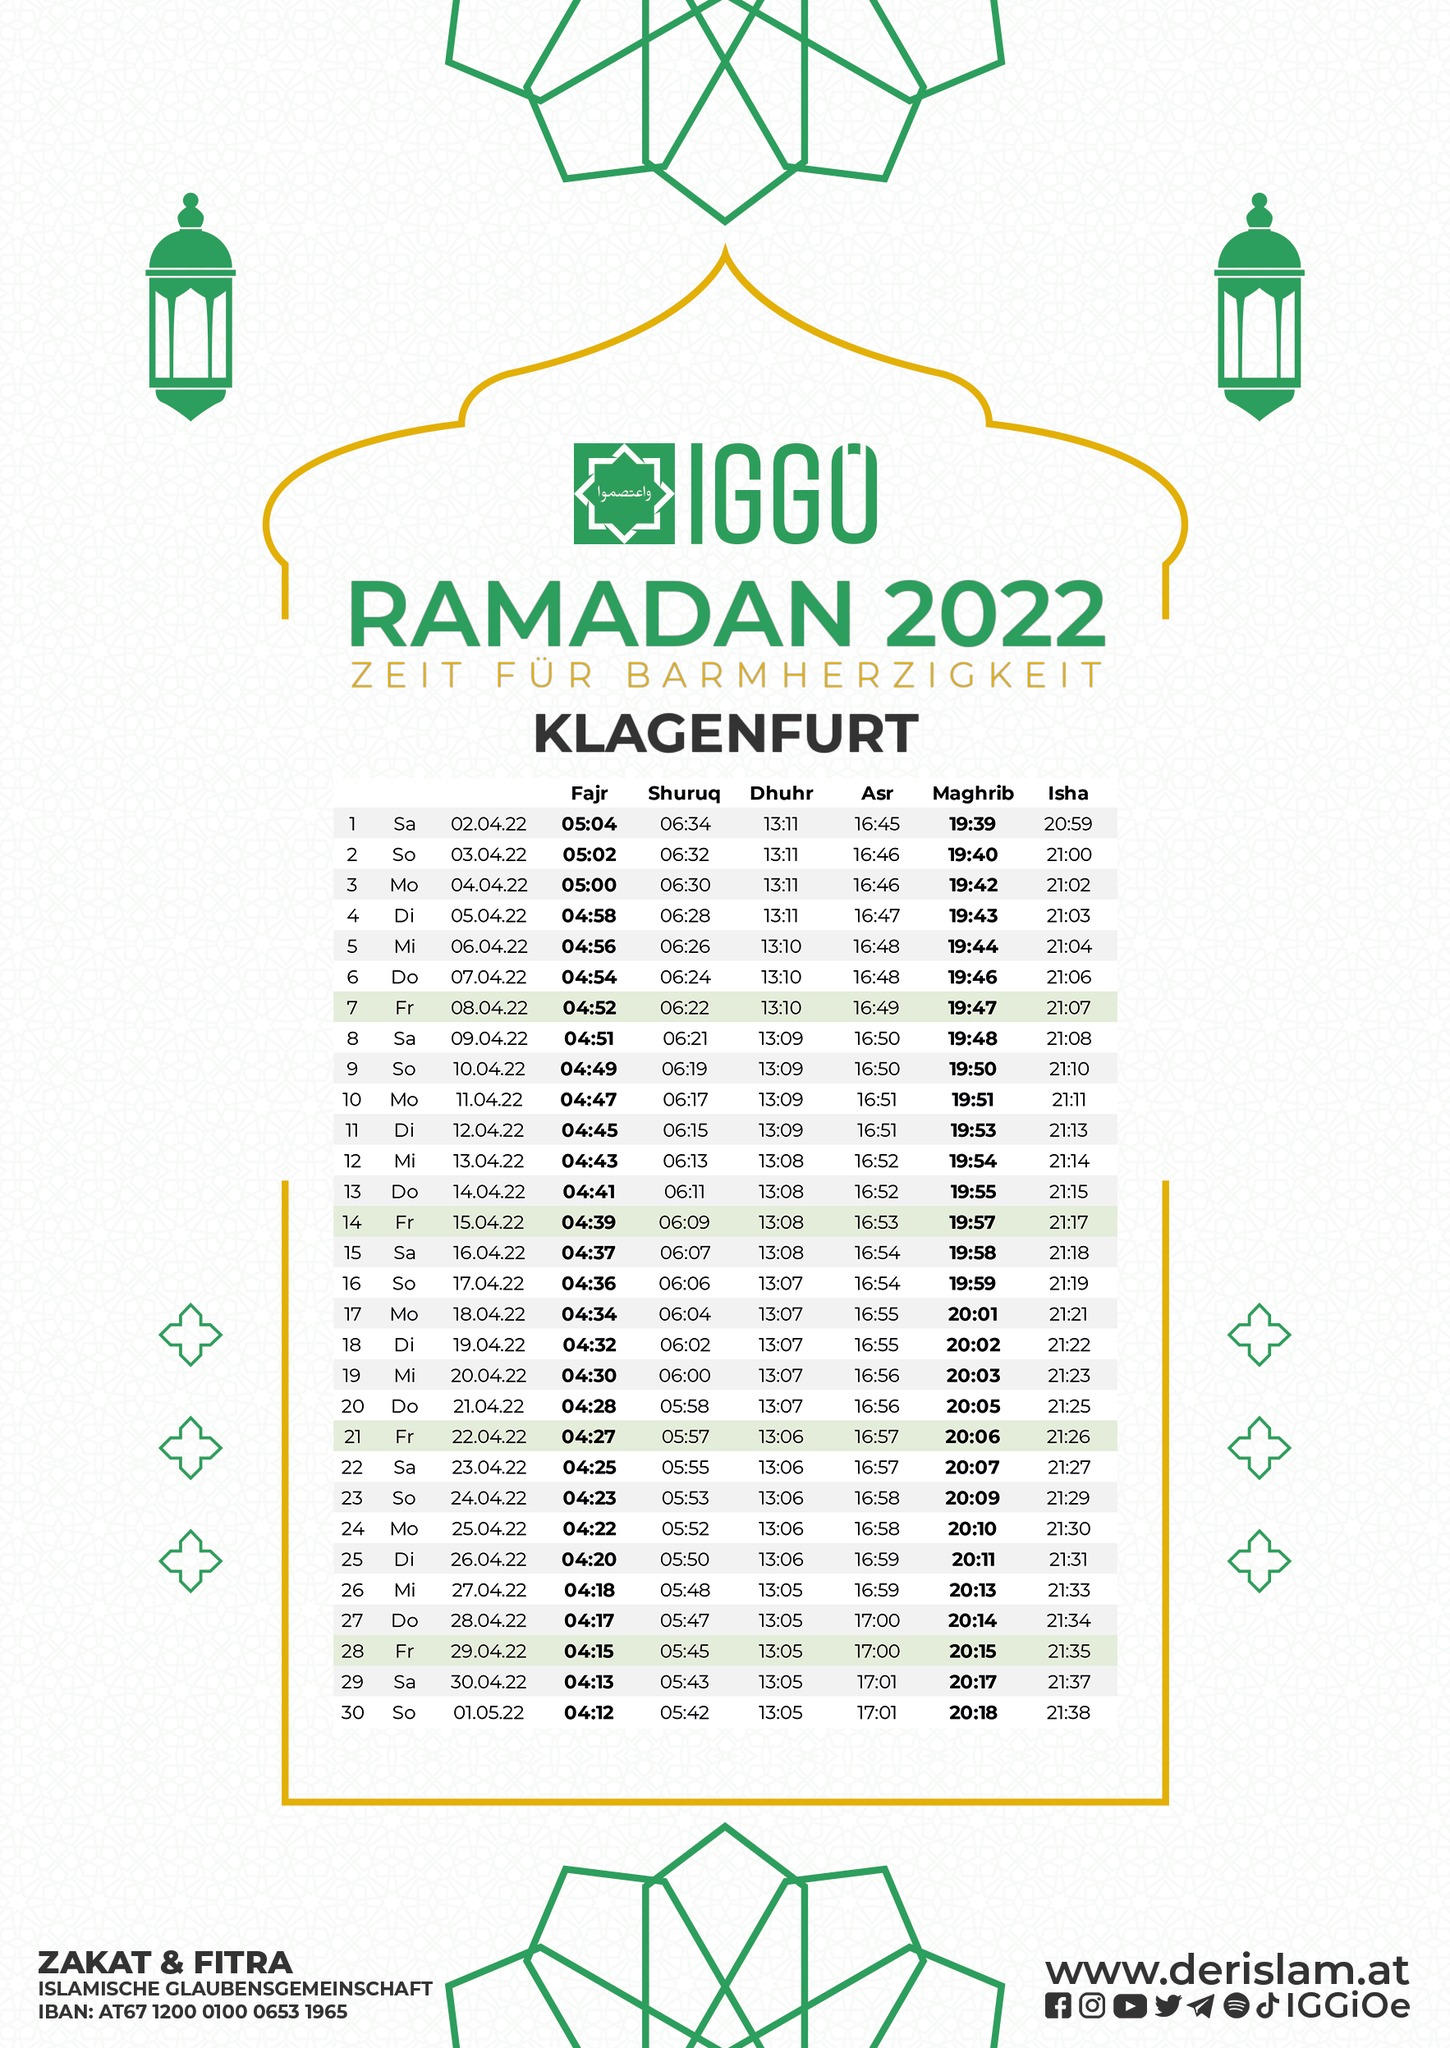 إمساكية رمضان لمدينة كلاجنفورت 2022